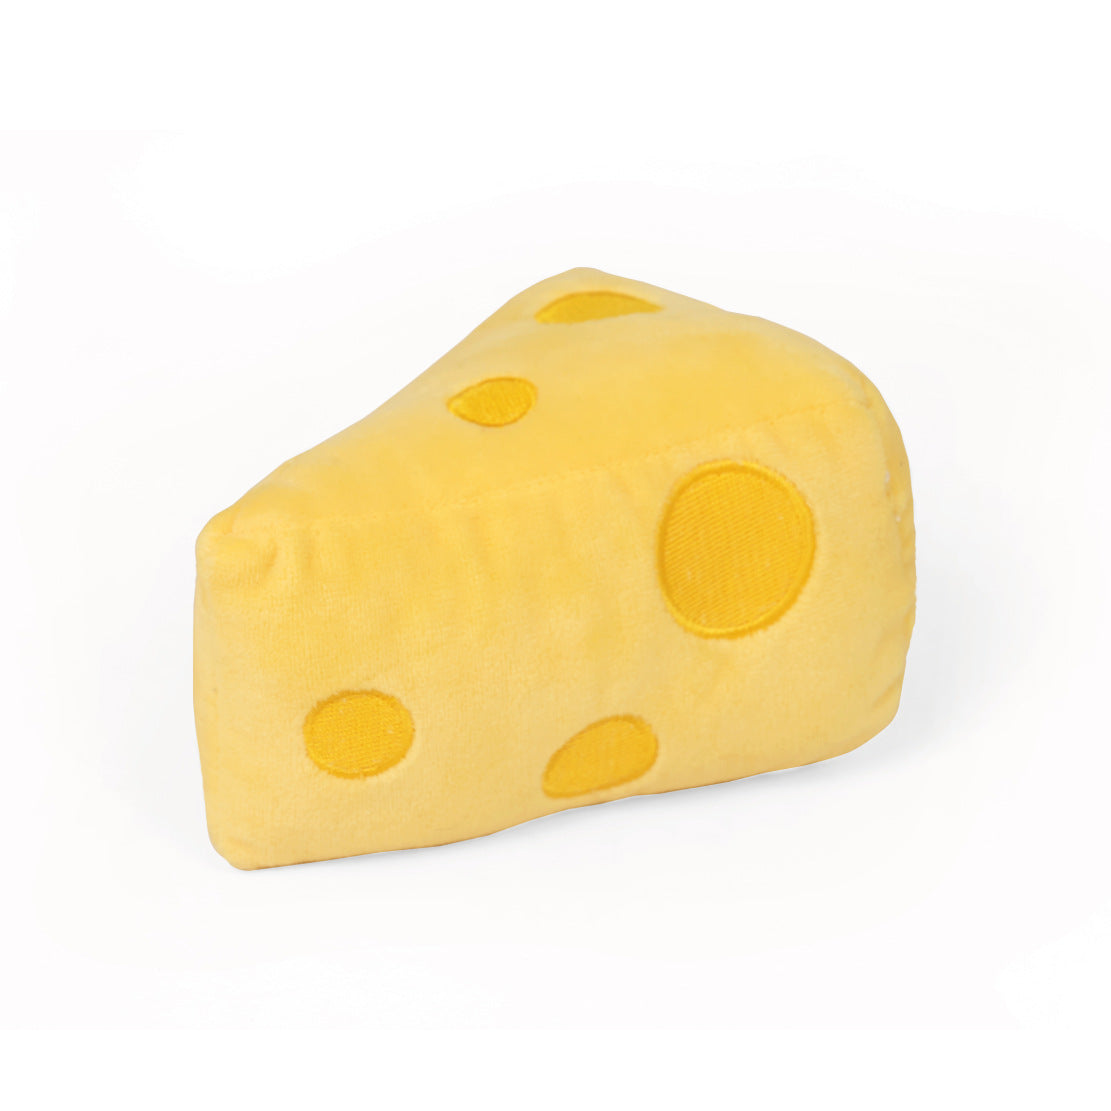 マタタビ入りチーズのもちもちぬいぐるみ2416